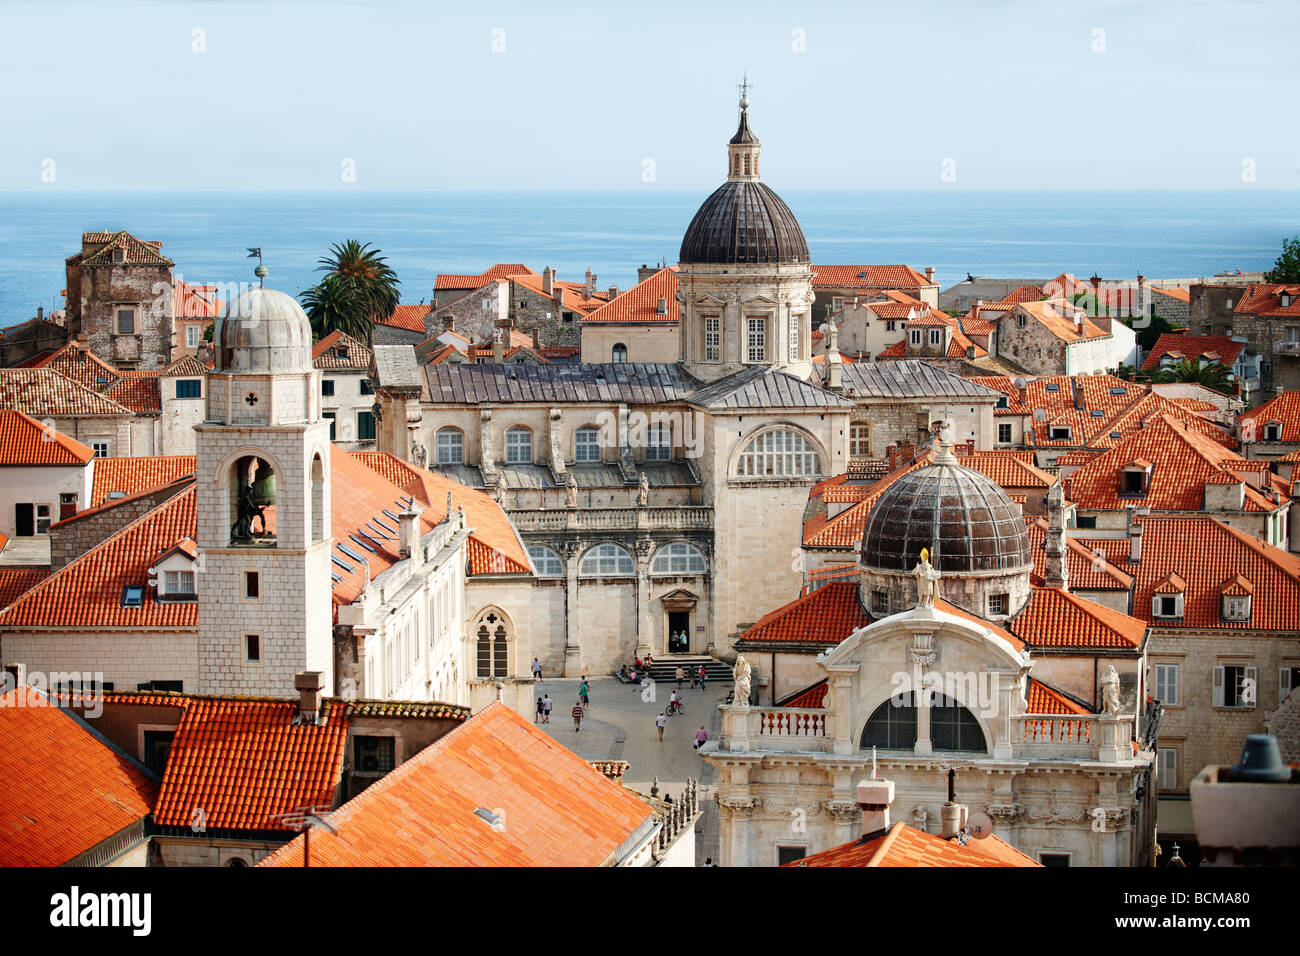 Kathedrale und Dach Tops von Dubrovnik - Kroatien Stockfoto